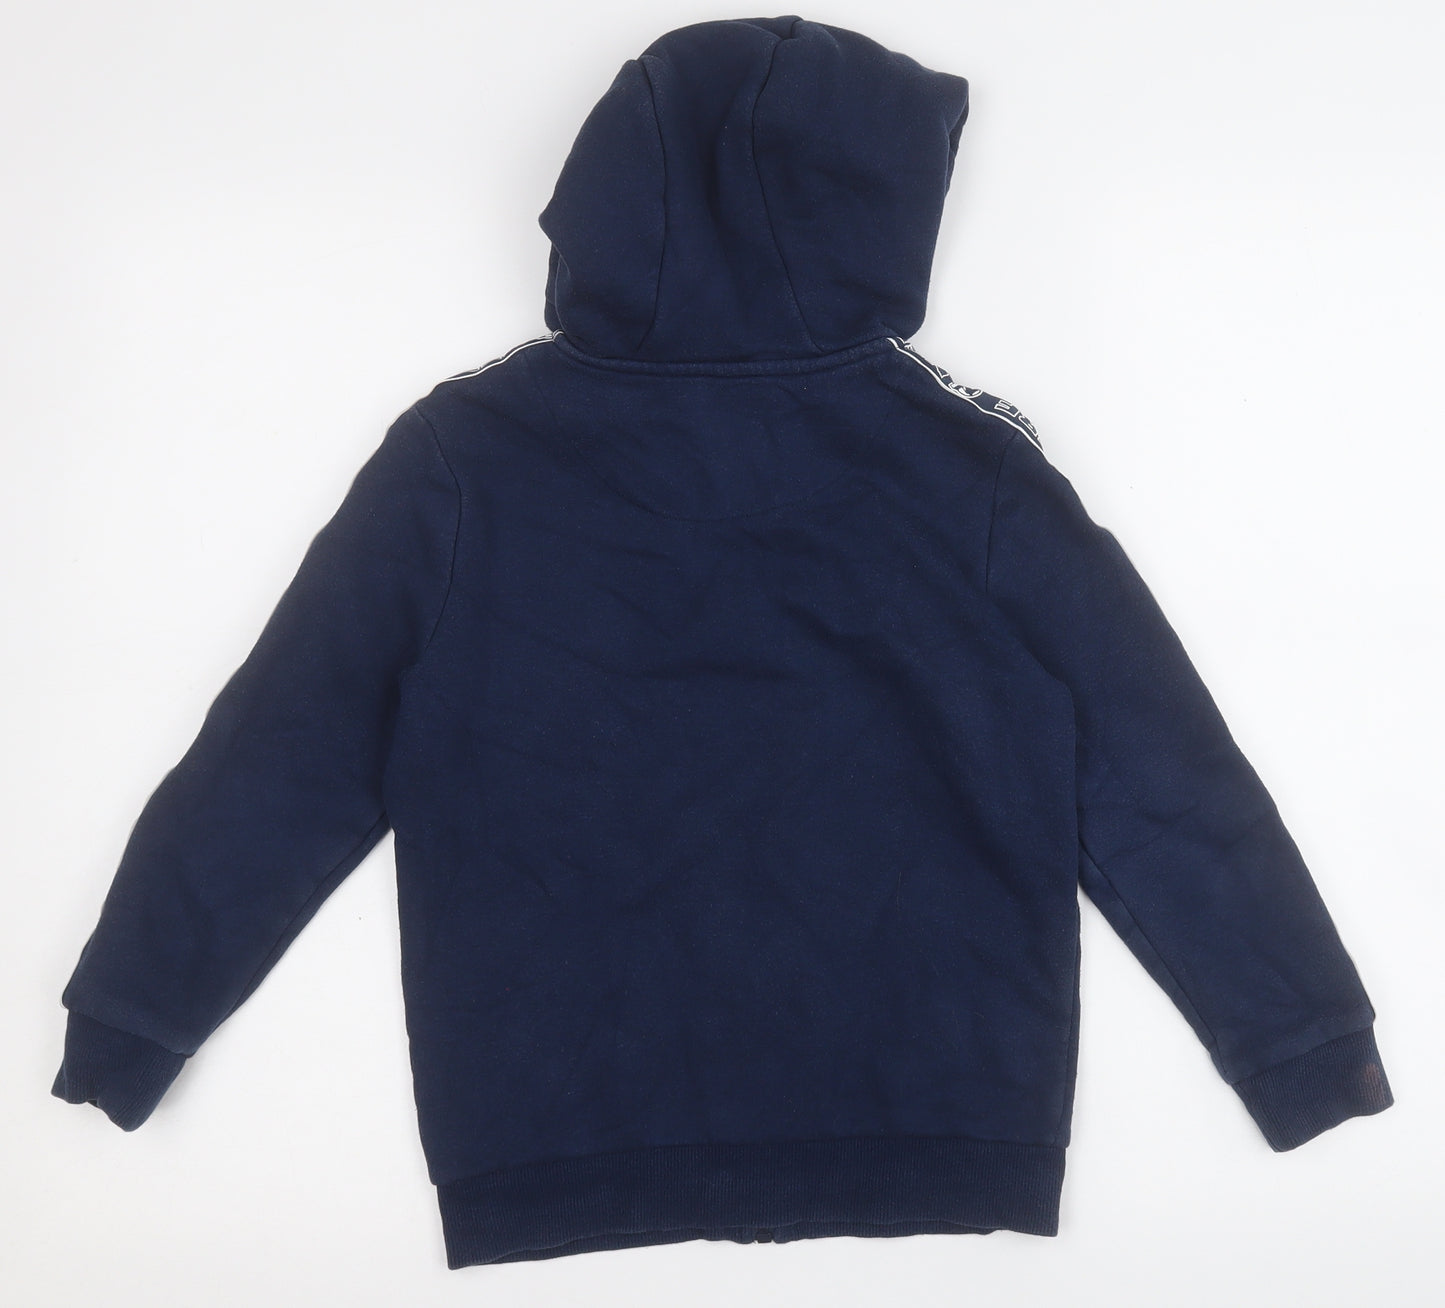 NERF Boys Blue   Jacket  Size 7-8 Years   - Nerf